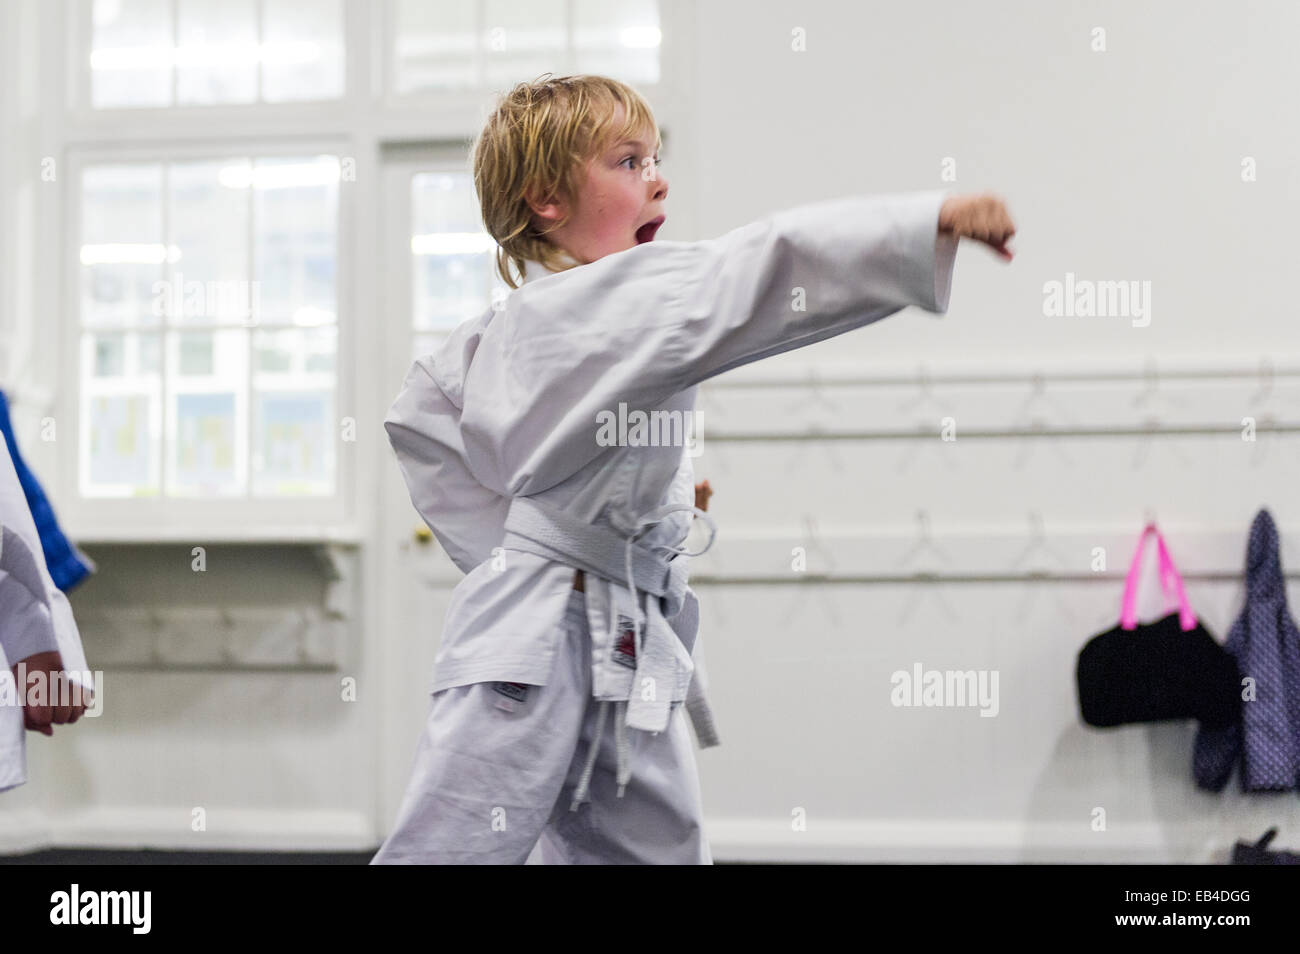 Ein Junge praktiziert eine Stanz Bewegung während des Karate Trainings. Stockfoto